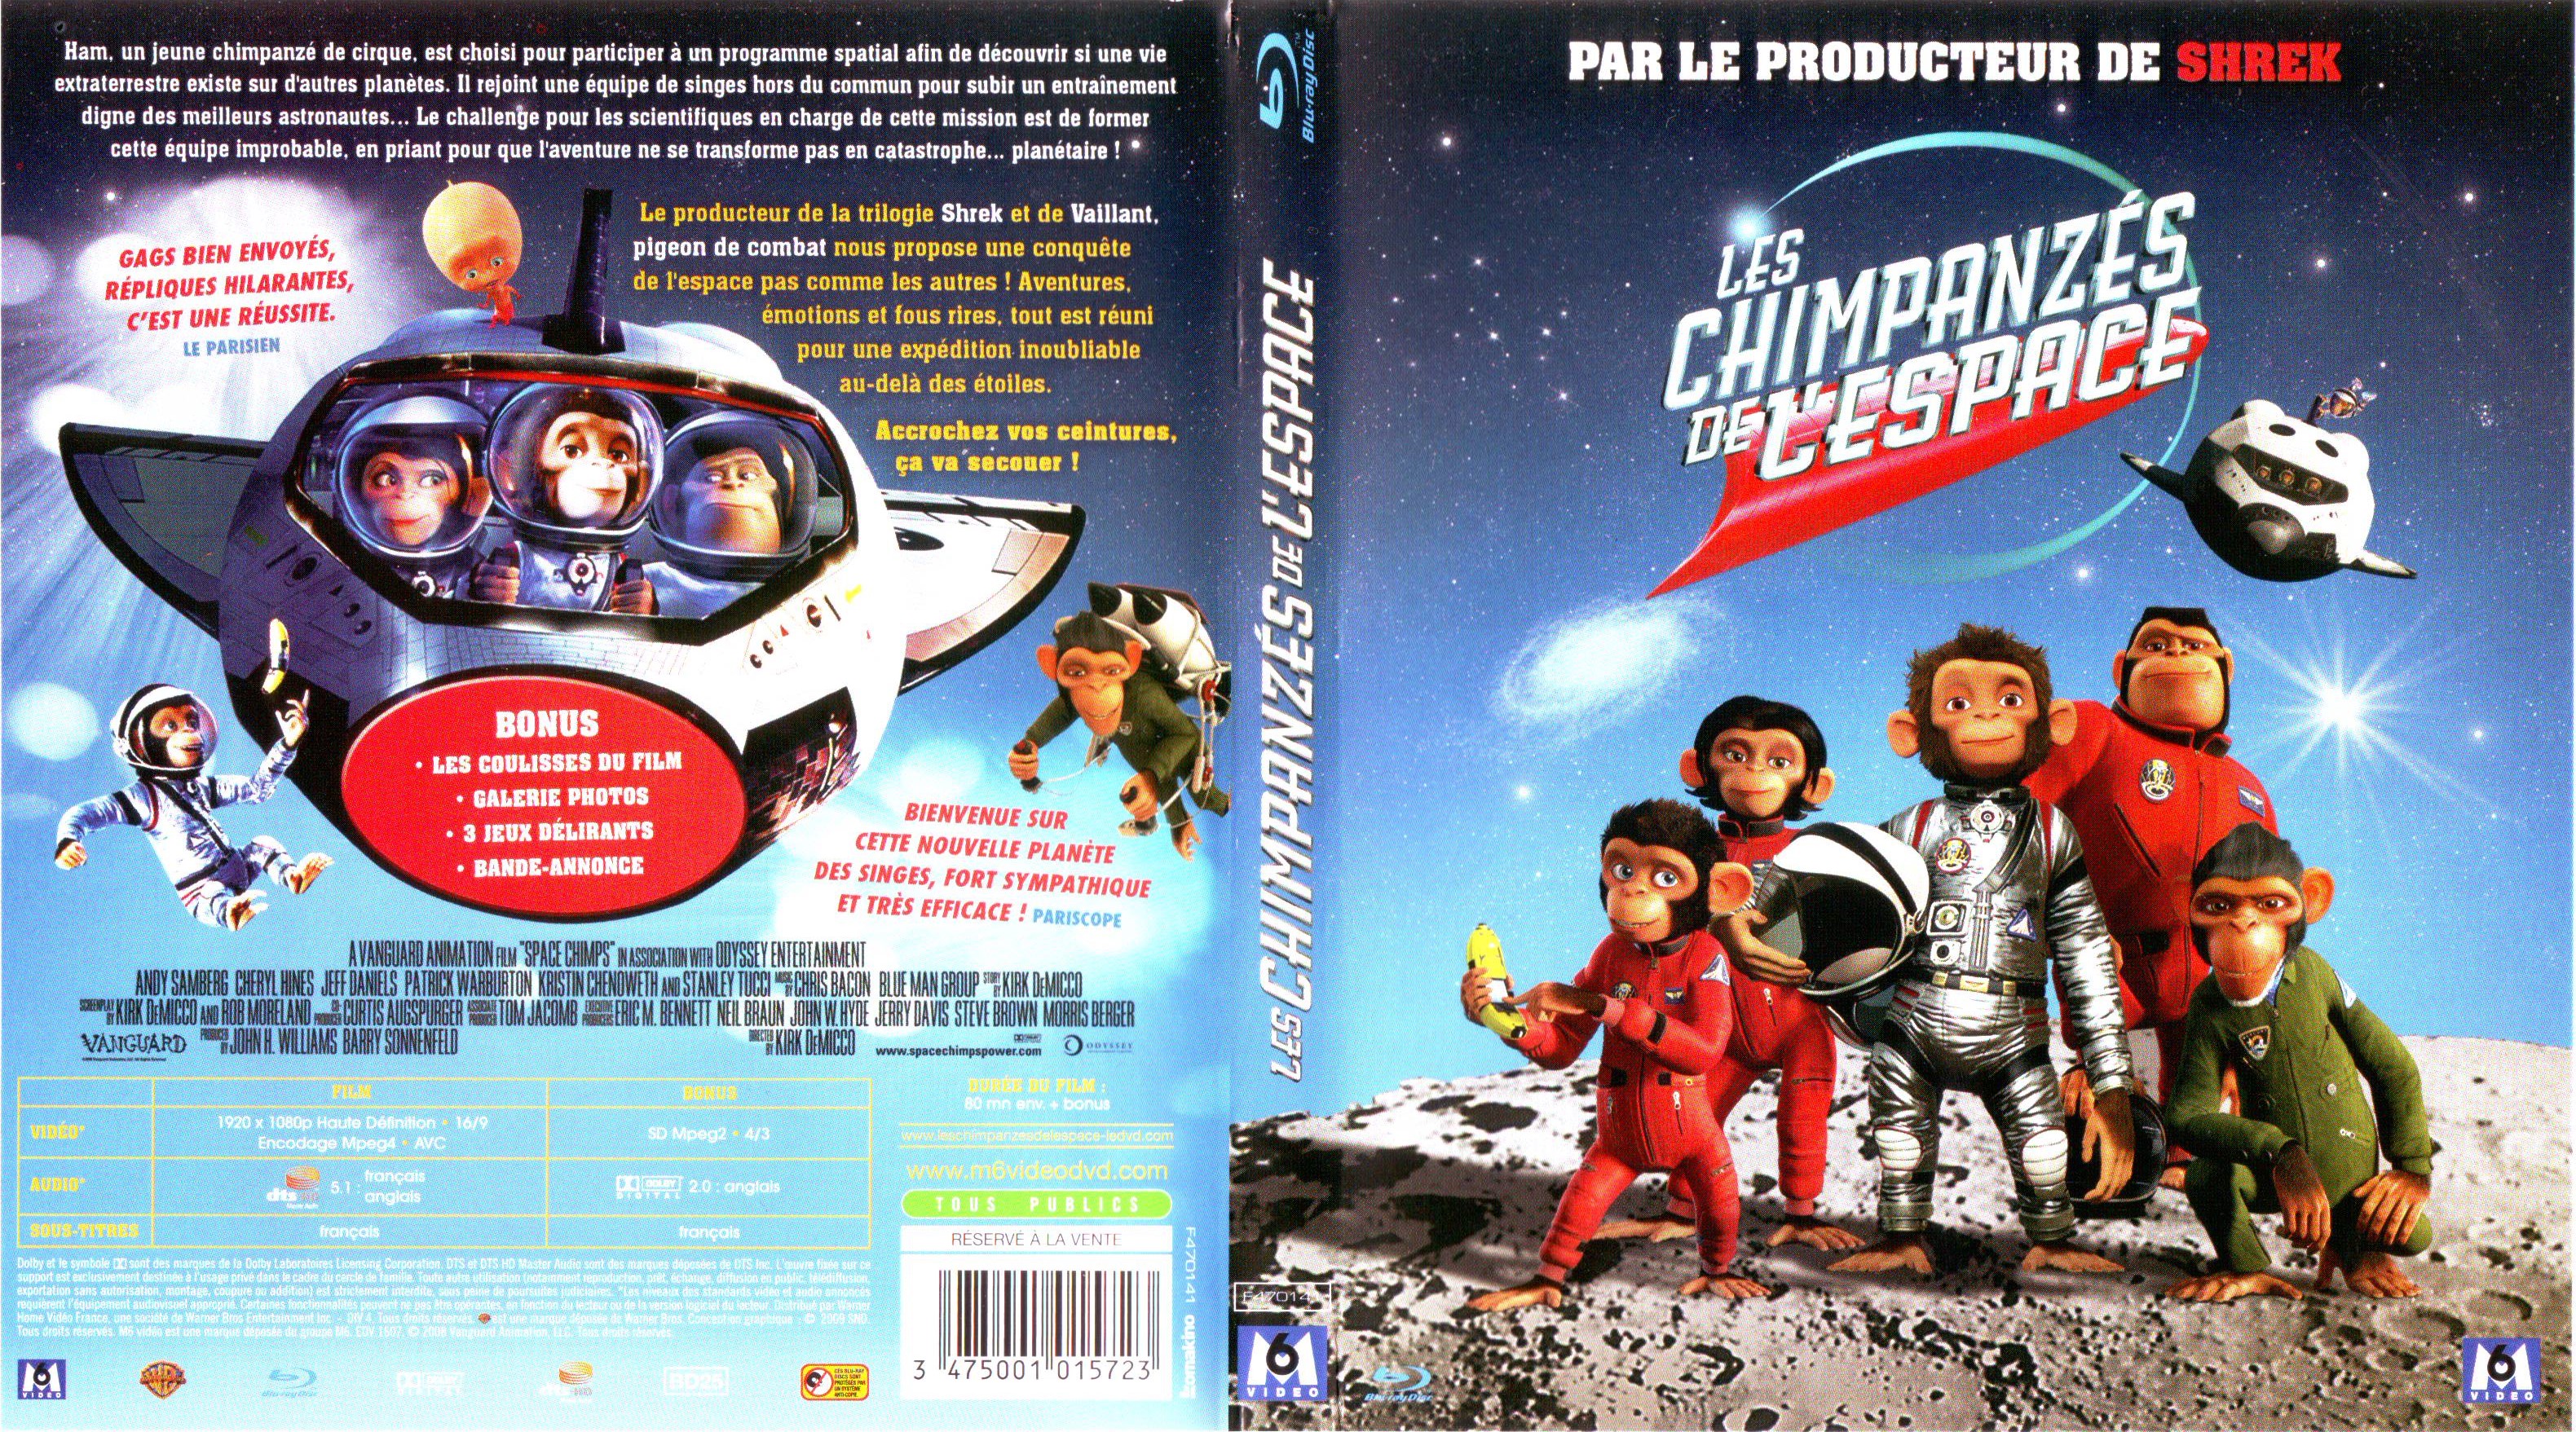 Jaquette DVD Les chimpanzs de l